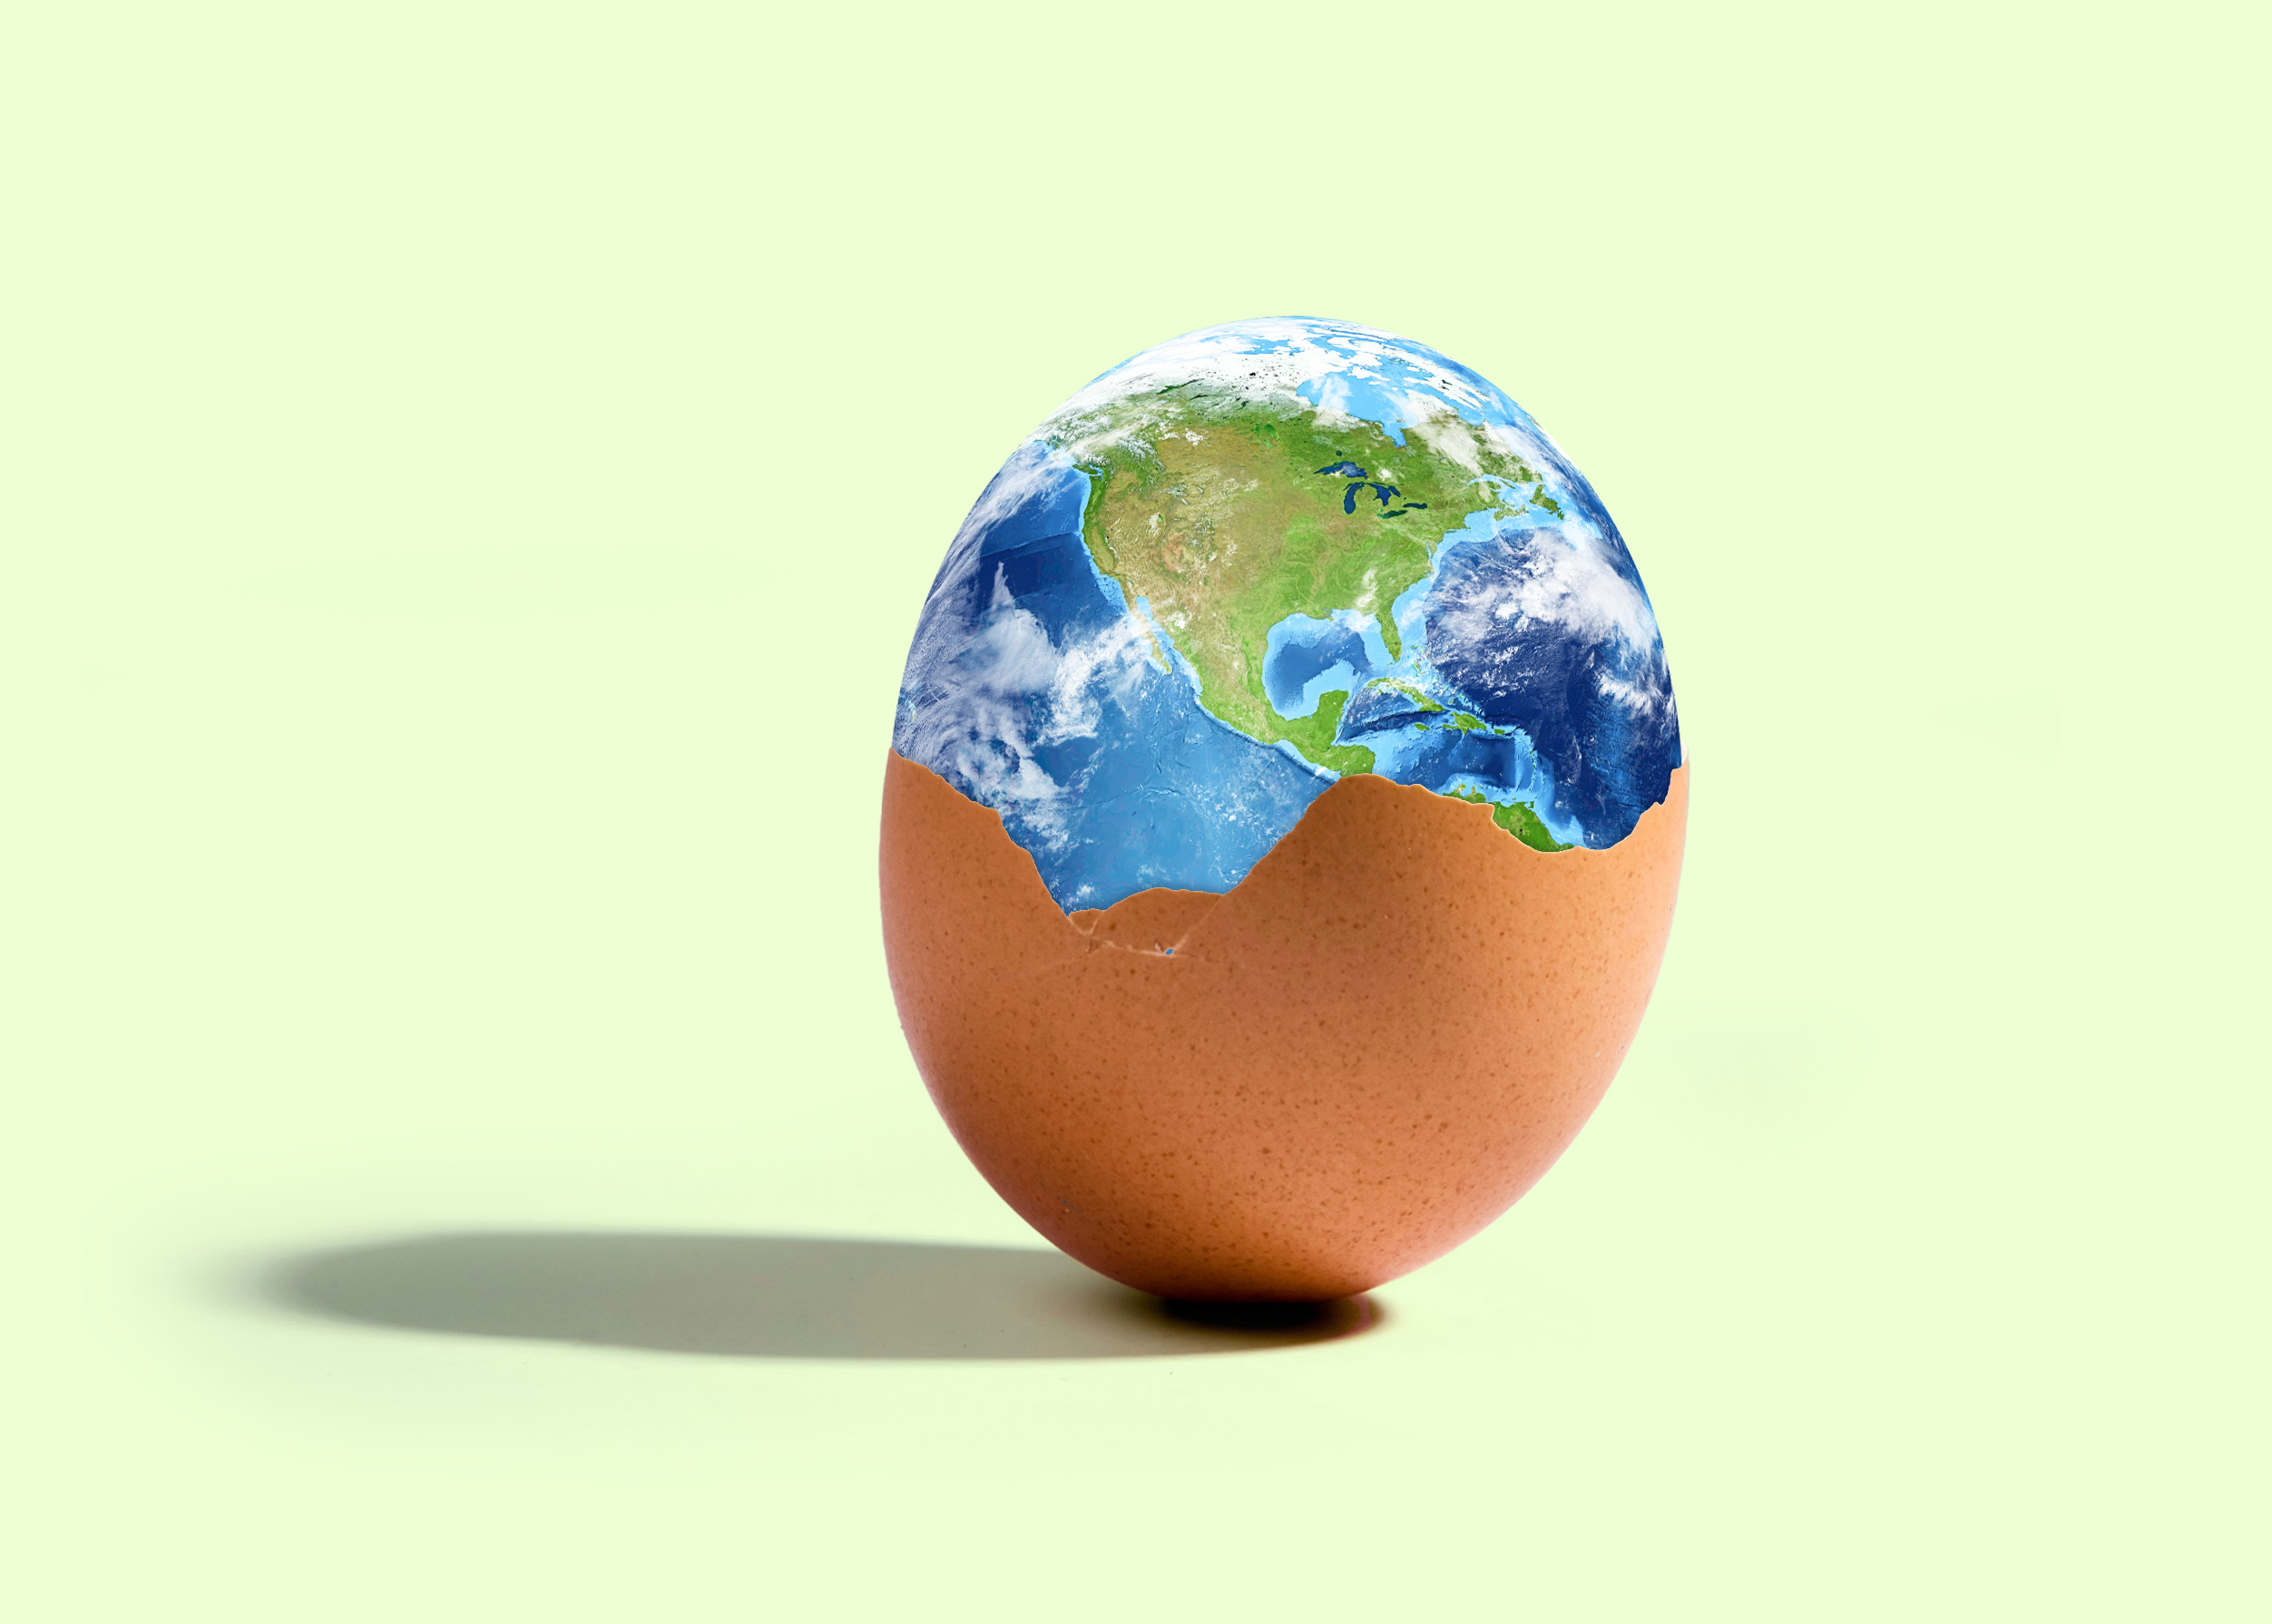 Les œufs durables